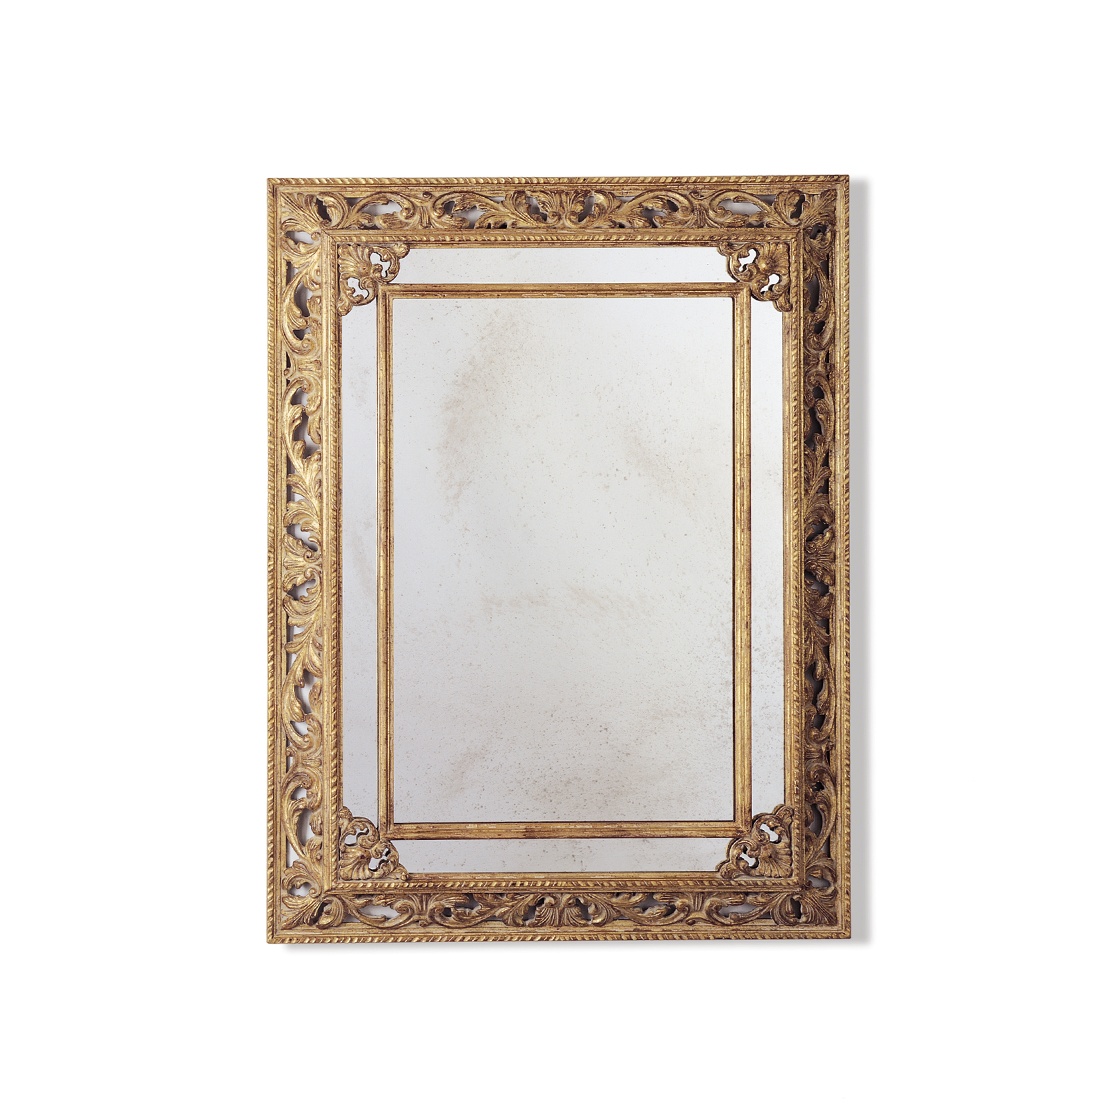 Buckingham mirror in Distressed gold - Beaumont & Fletcher